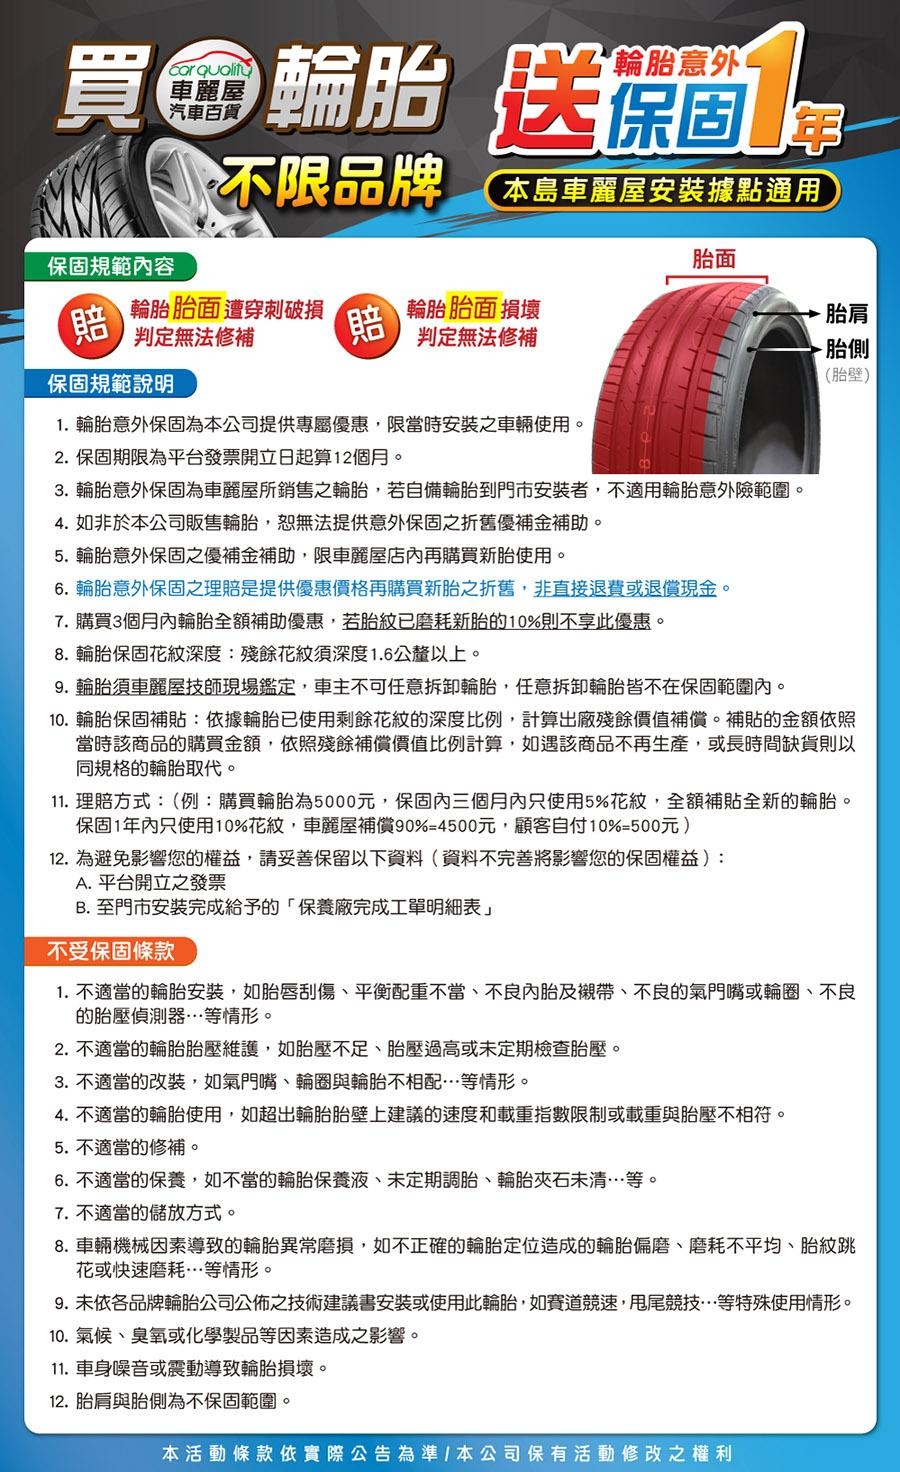 【馬牌】UC6_195/55/16吋 舒適操控輪胎_送專業安裝(UC6)